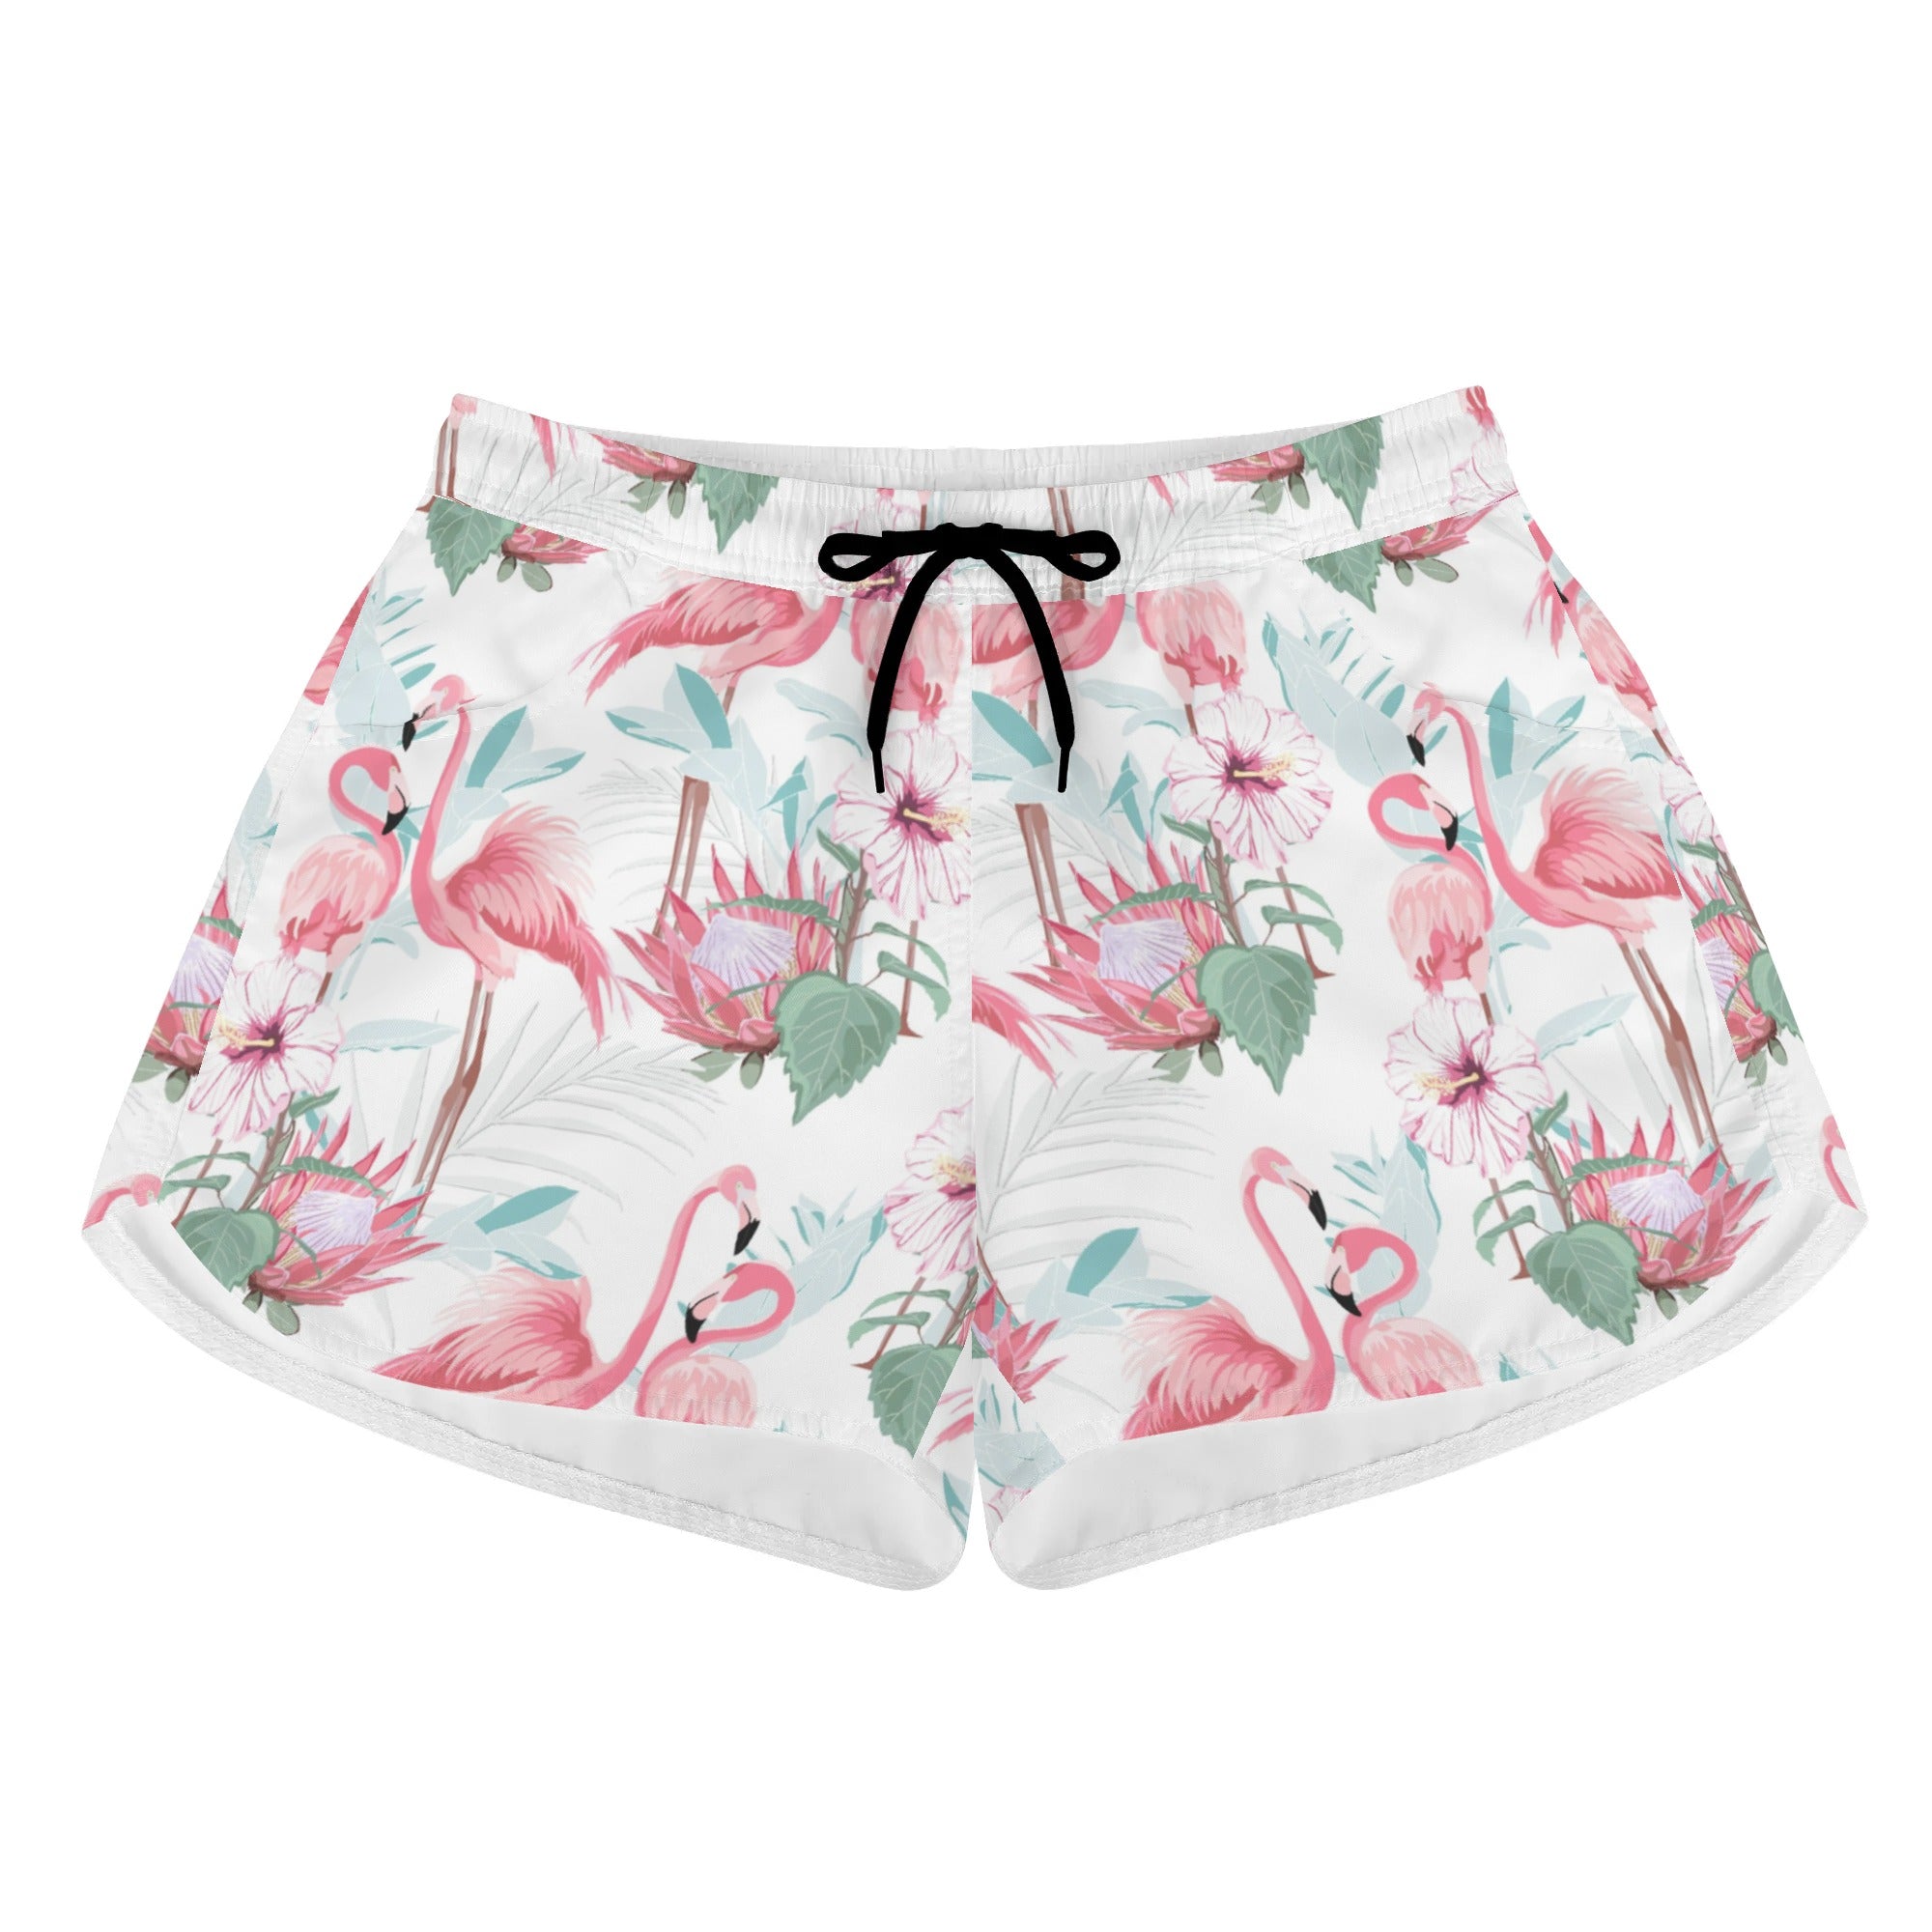 Womens Printed Beach Shorts - Flamingoes